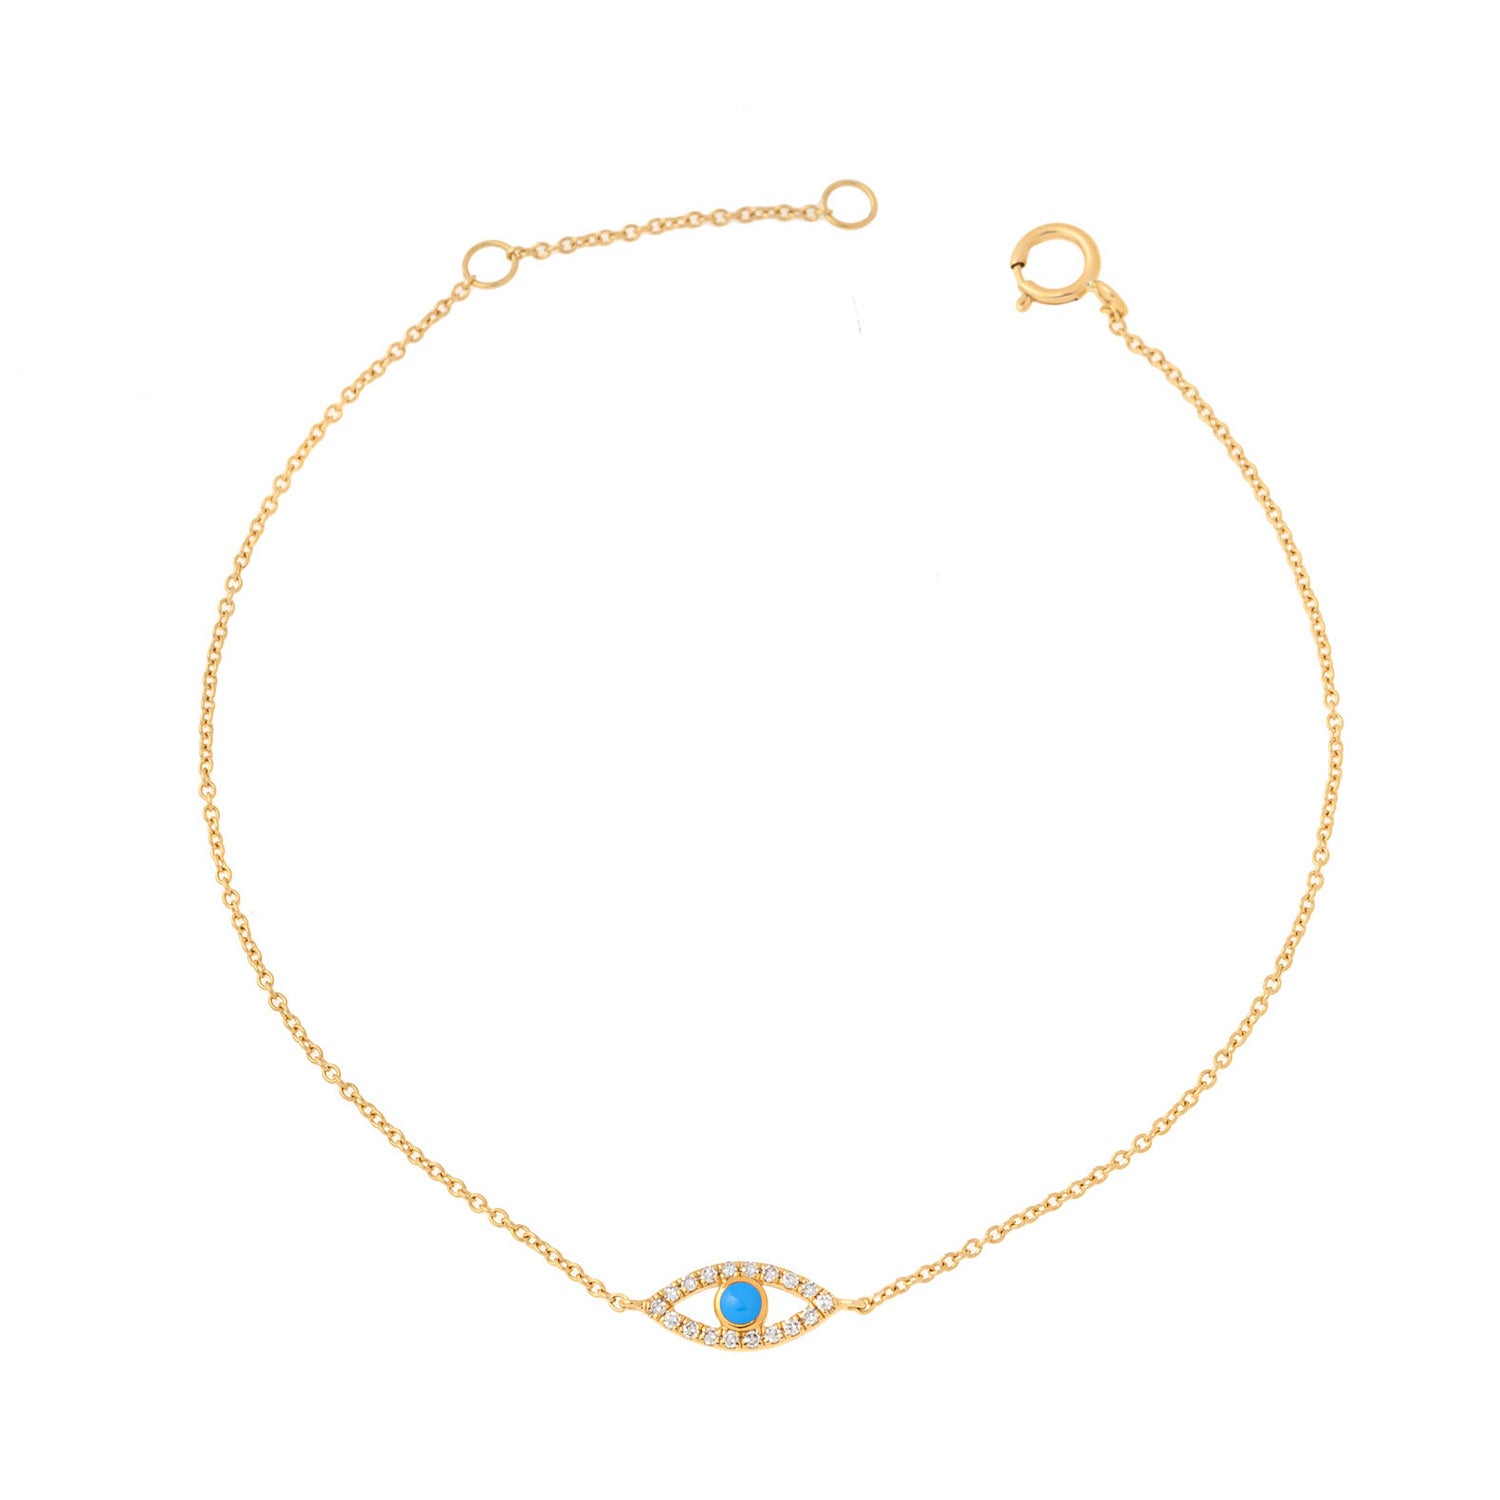 Evil eye bracelet. Diamond evil eye bracelet. Evil eye chain bracelet. Sapphire and diamond eye bracelet. Eye bracelet. Eye jewellery. Anatol jewellery. Χρυσά κοσμήματα. Κόσμημα με μάτι. Βραχιόλι με μάτι. Χρυσό μάτι με μπριγιάν. Ανατολ κοσμήματα.